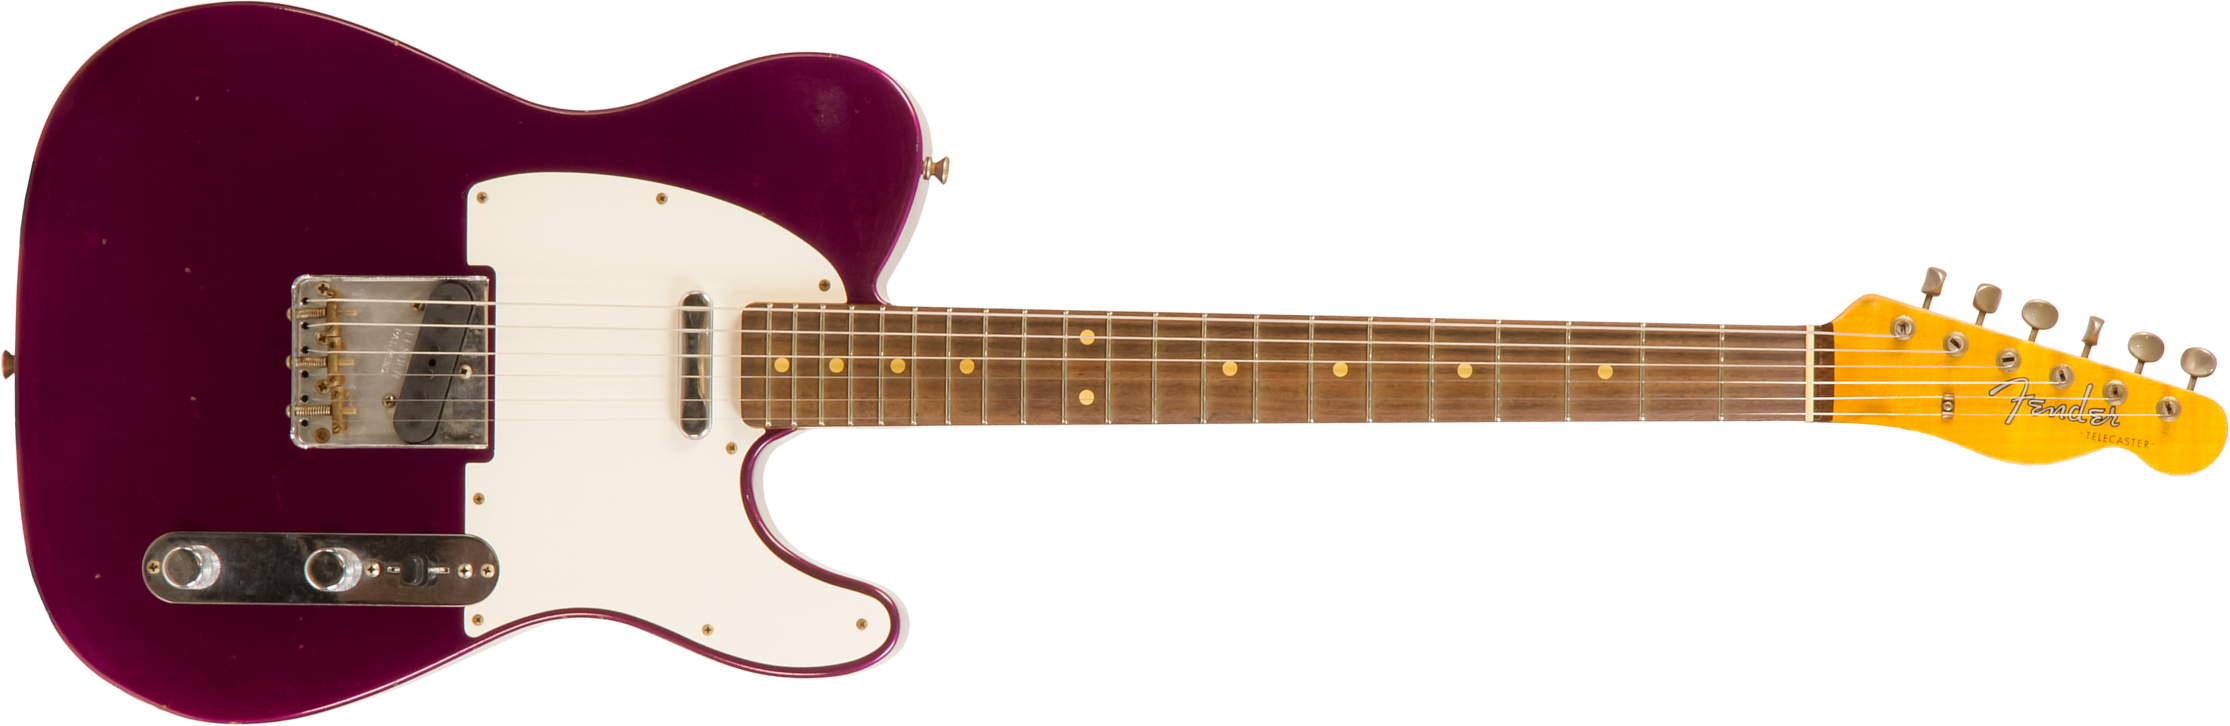 Fender Custom Shop Tele 1960 Rw #cz549121 - Journeyman Relic Purple Metallic - Guitare Électrique Forme Tel - Main picture